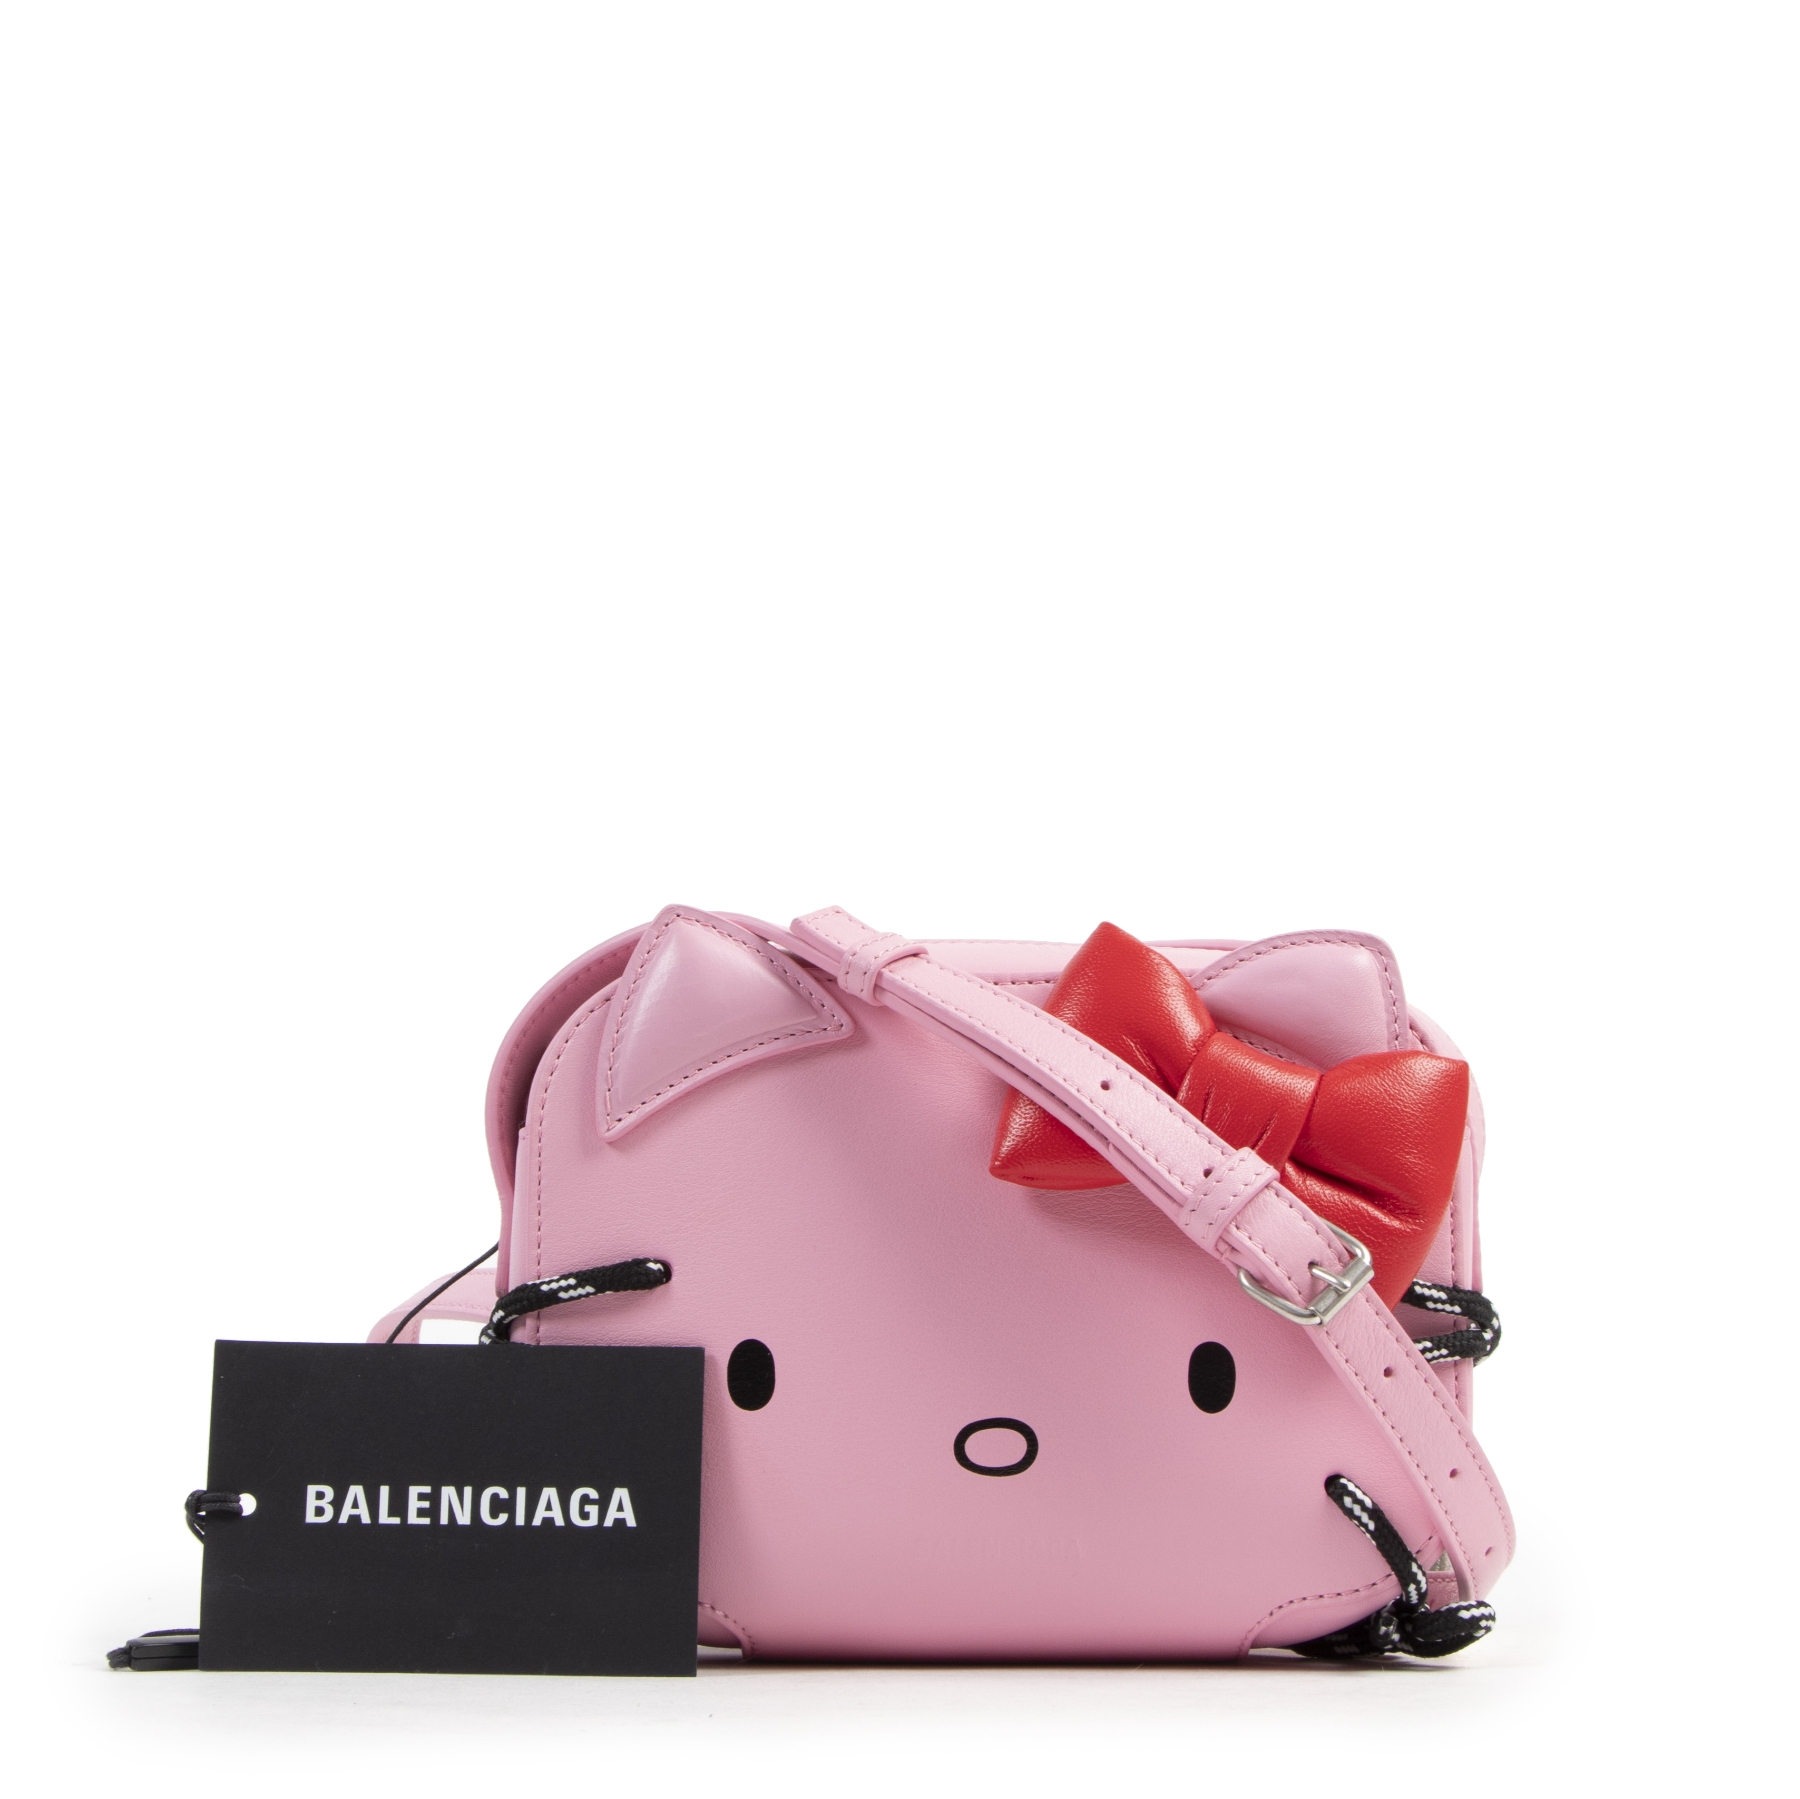 Louis Vuitton Hello Kitty Pinky Luxury Brand Women Small Handbag